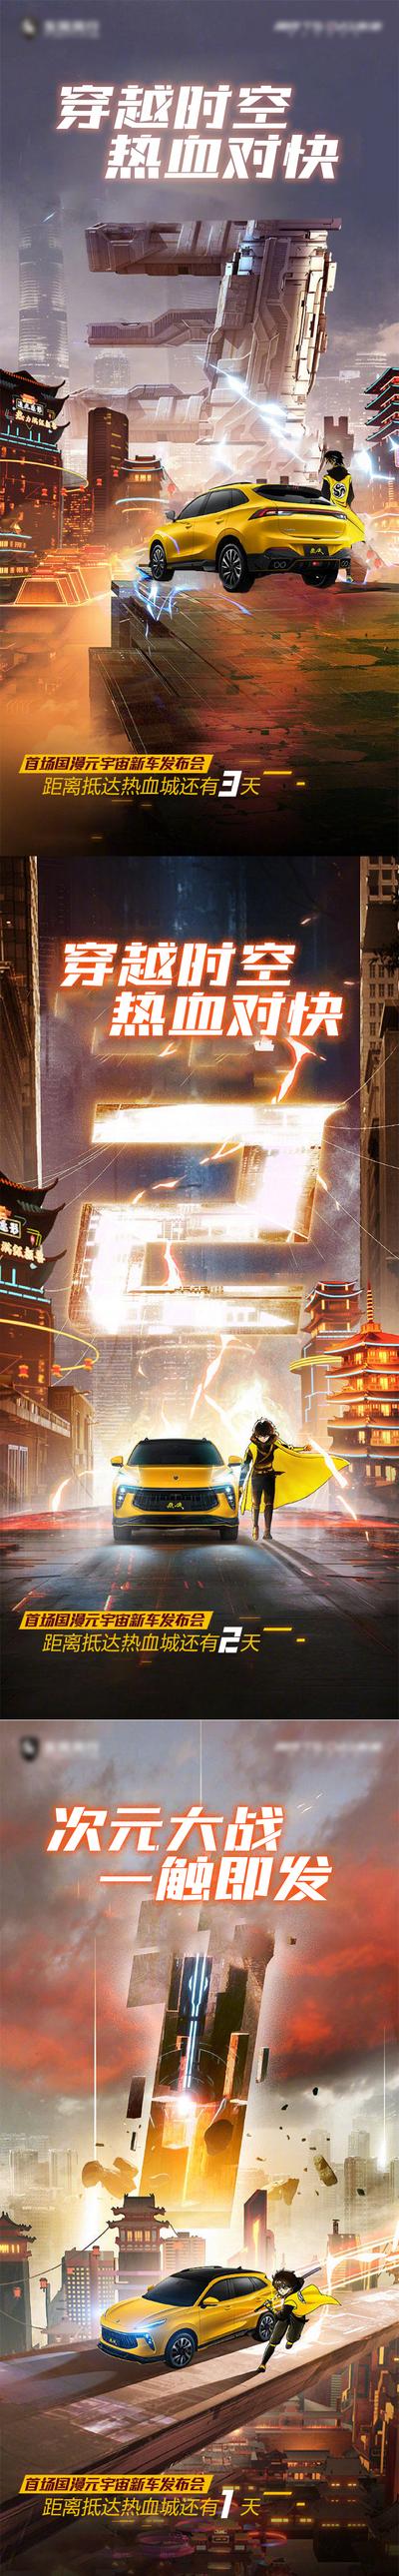 南门网 海报 游戏 汽车 倒计时 二次元 年轻 科幻 炫彩 系列